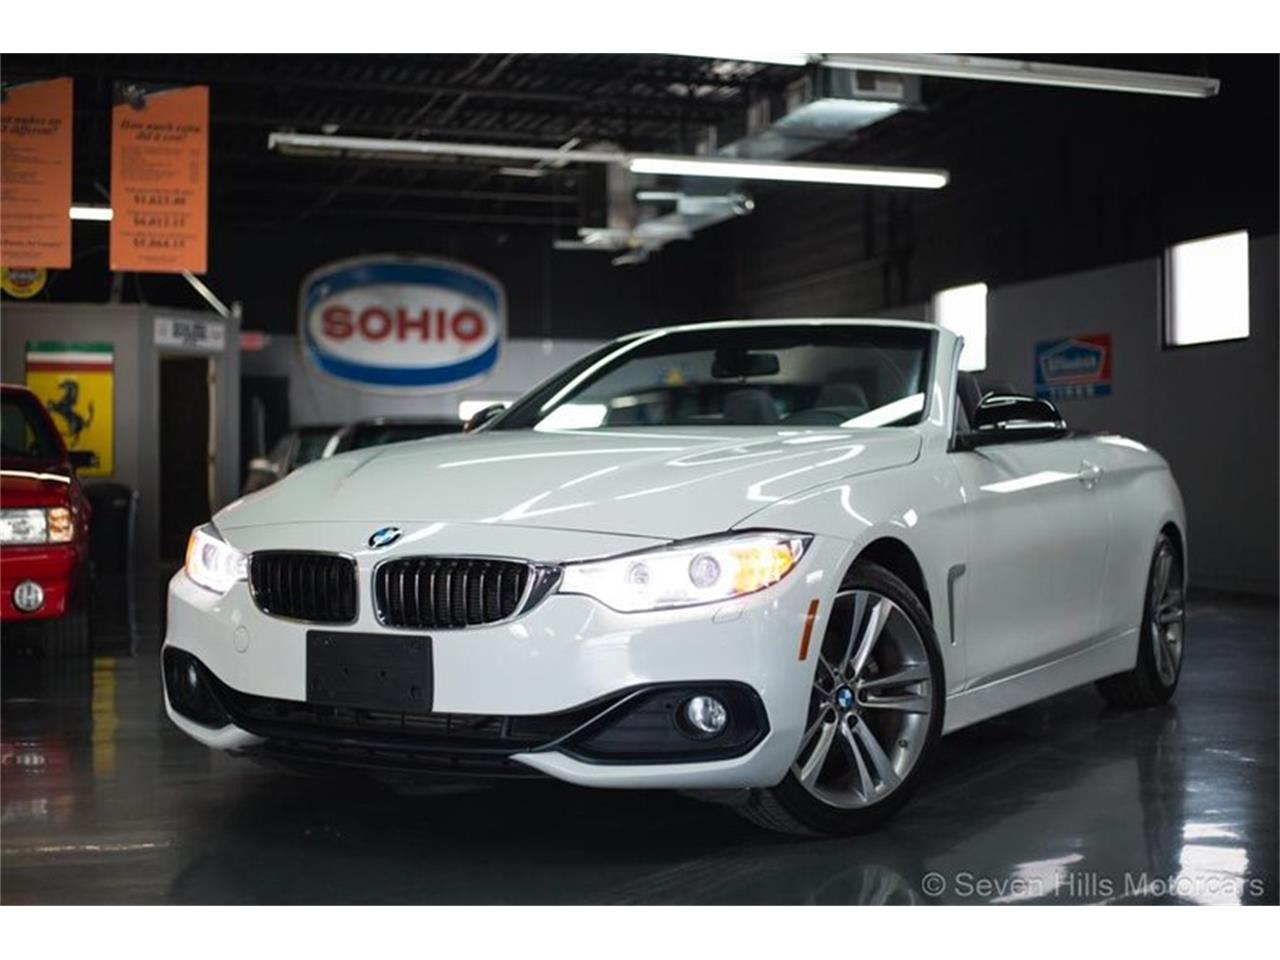 For Sale: 2015 BMW 428i in Cincinnati, Ohio for sale in Cincinnati, OH